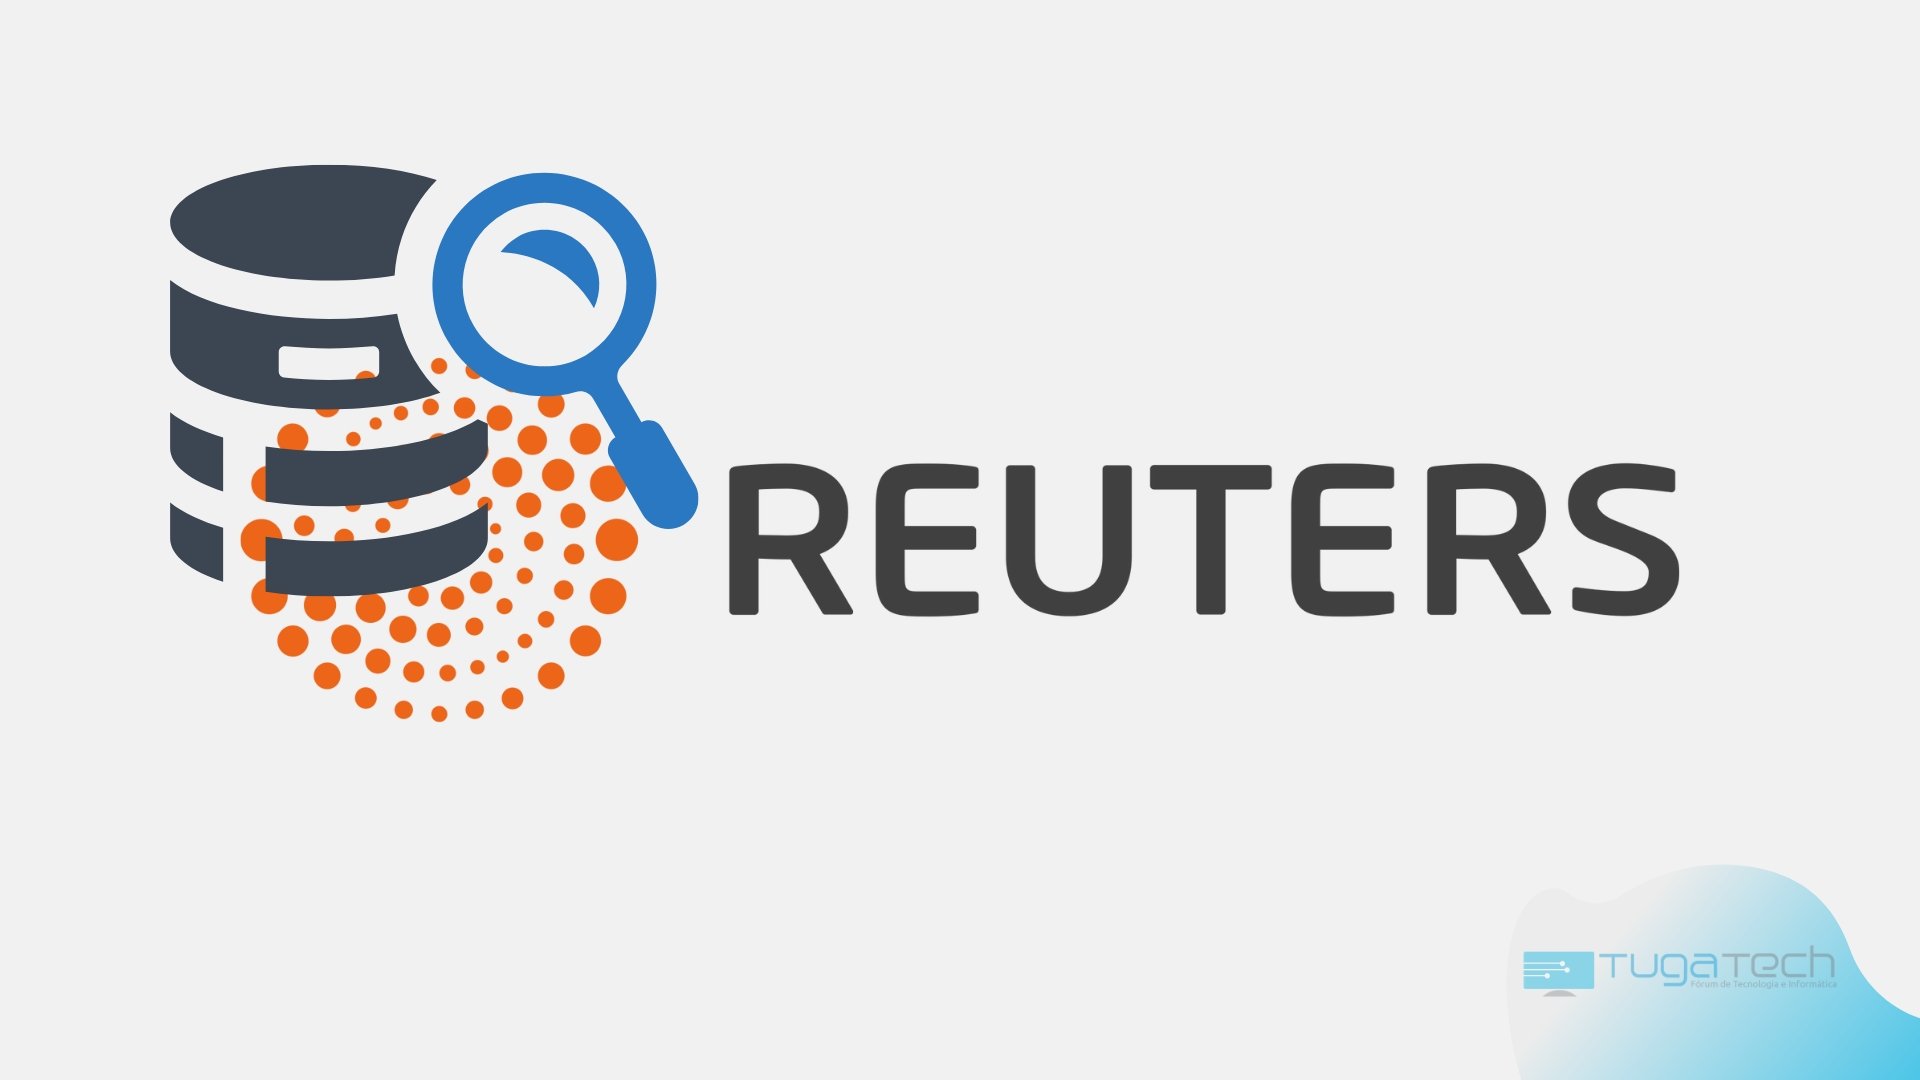 Logo da Reuters com base de dados sobre a imagem